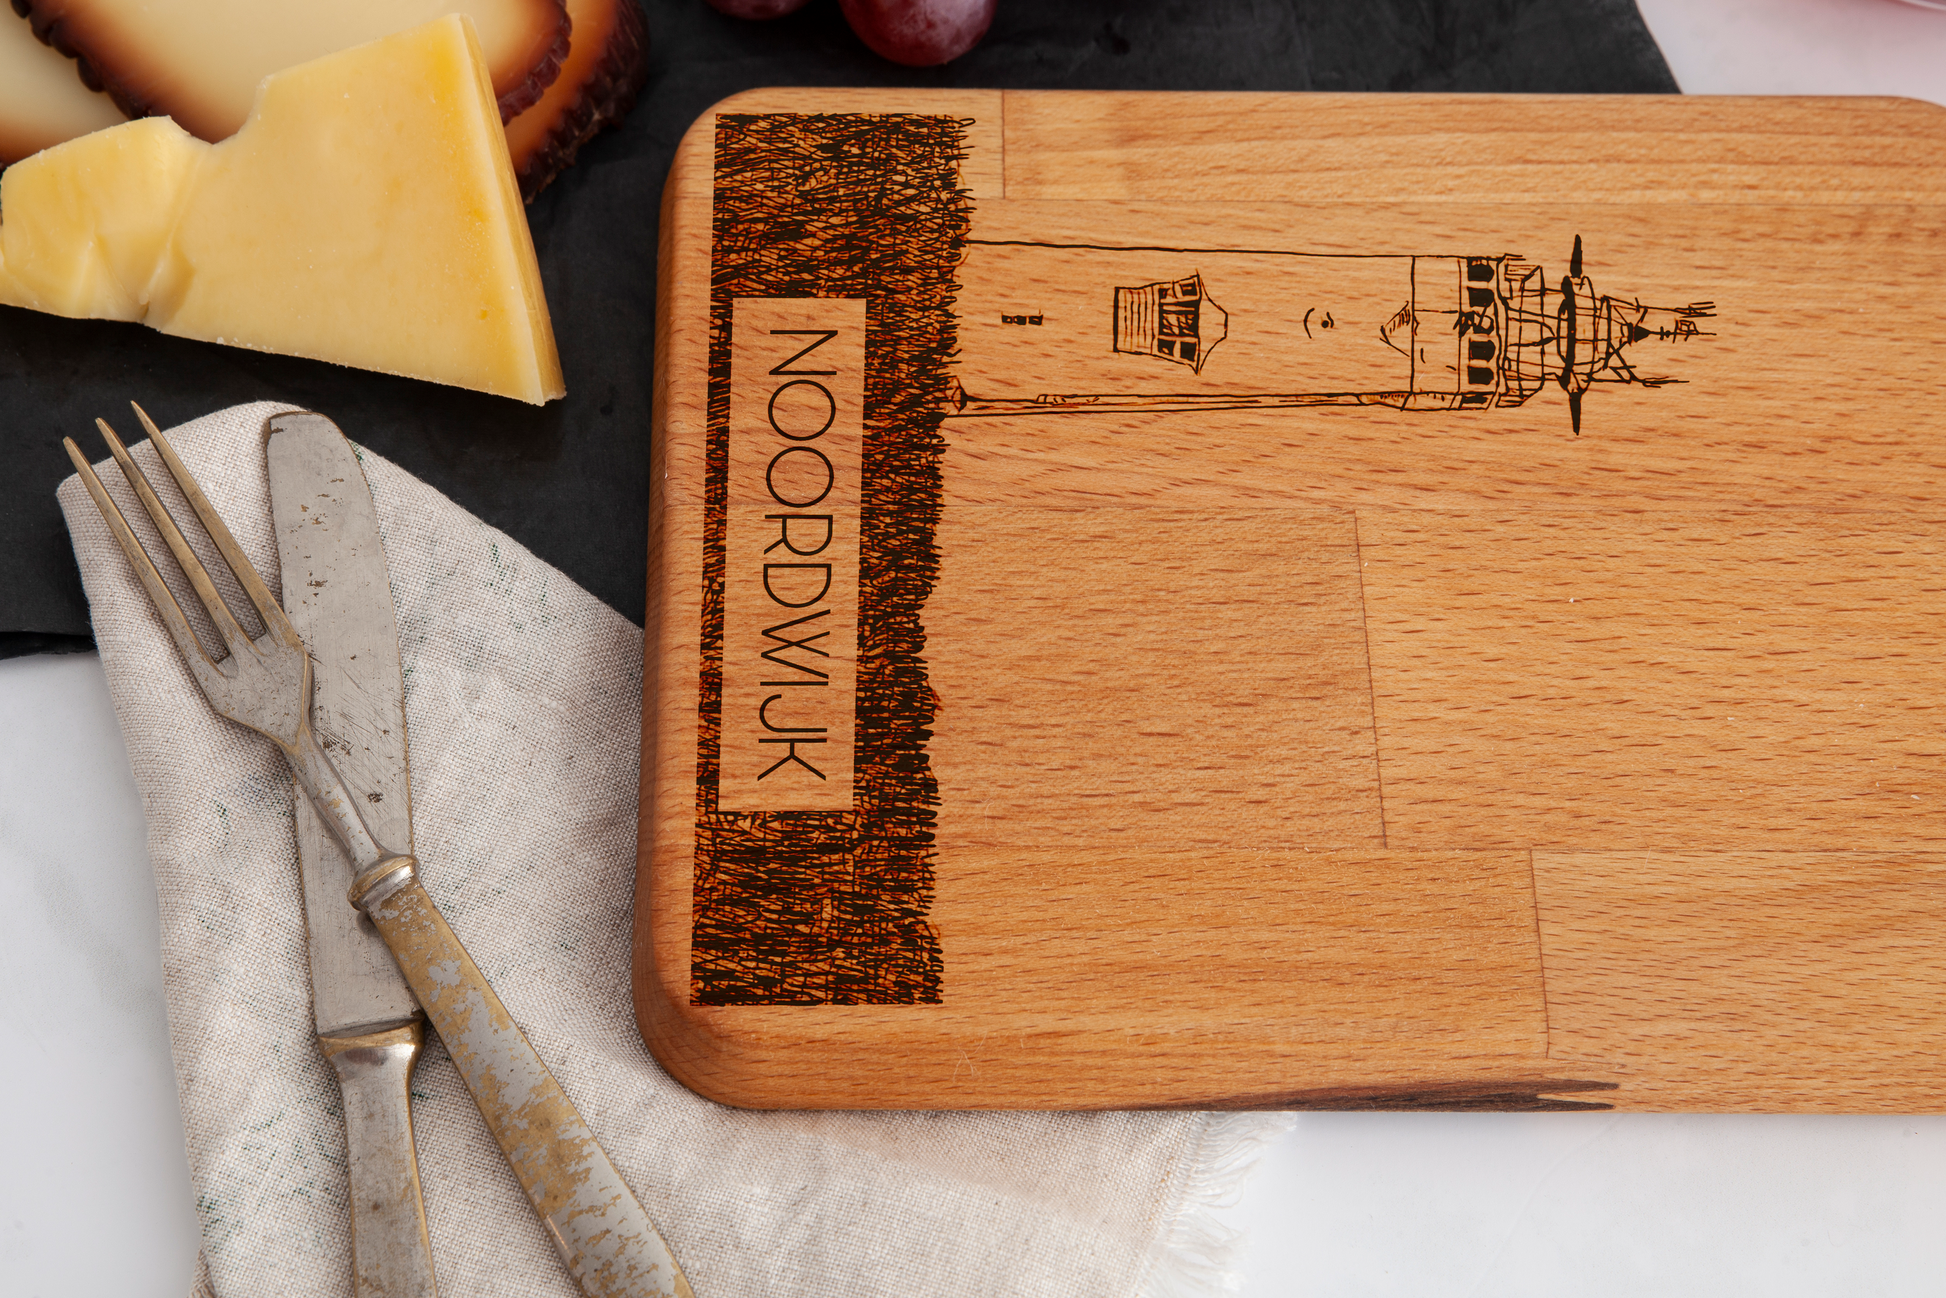 Noordwijk, Vuurtoren, cheese board, wood grain